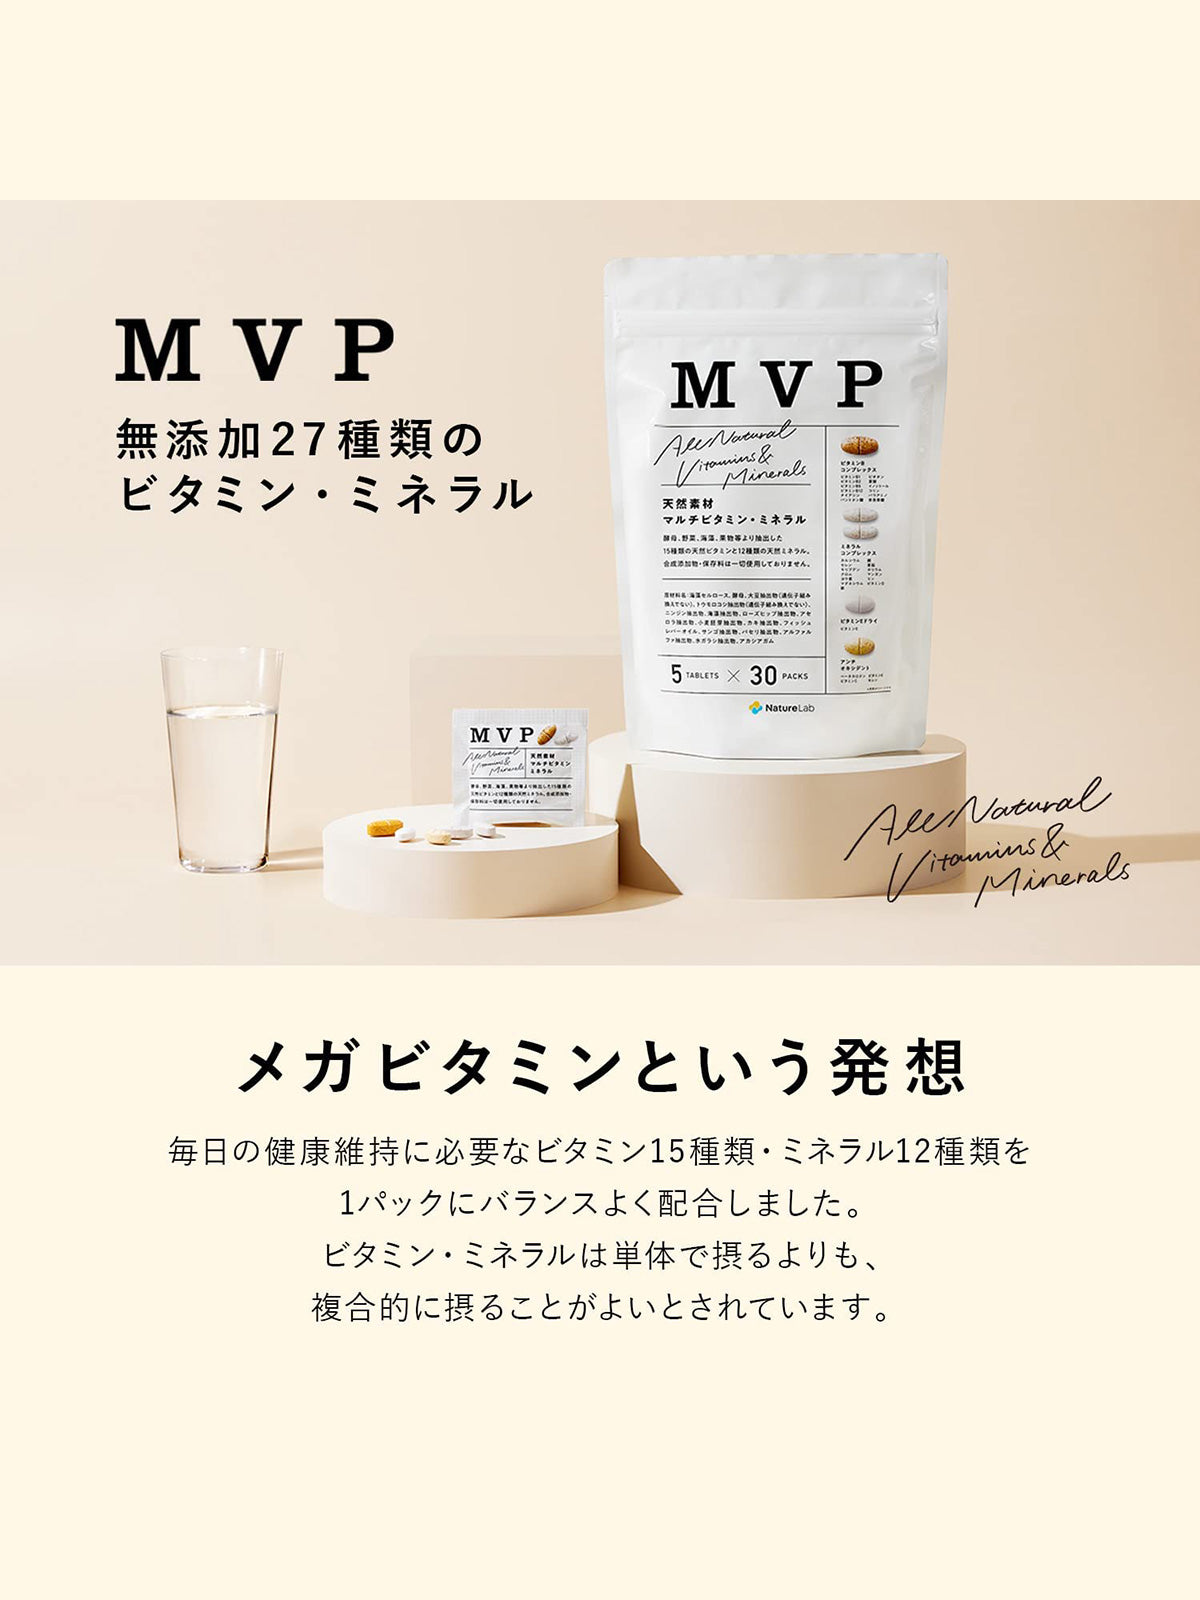 【メール便・送料無料】サプリメント [マルチビタミン・ミネラルパック] MVP 30日分